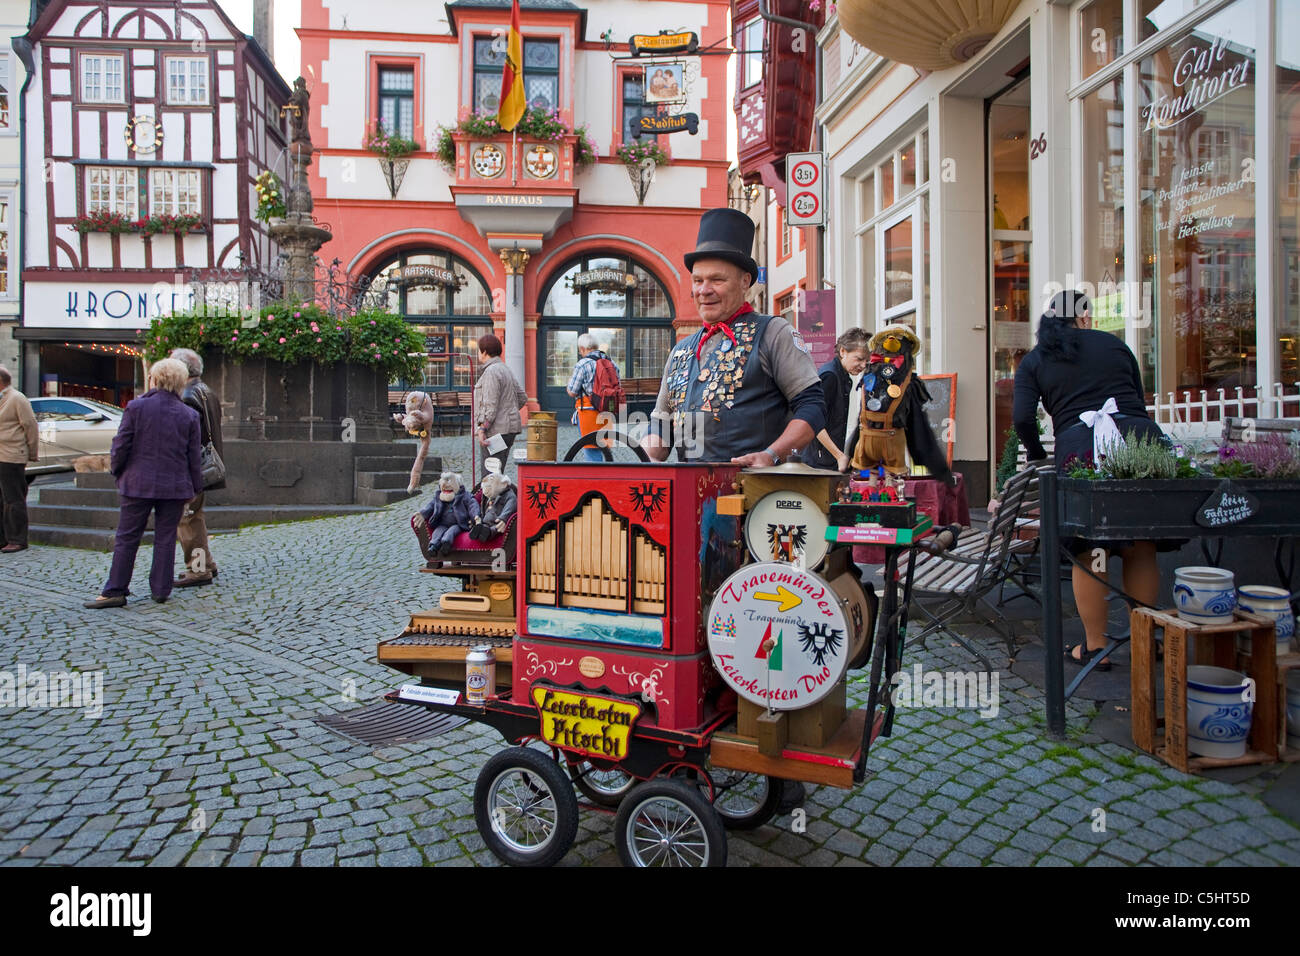 Joueur de hurdy-gurdy, orgue de canon, musacien de rue, place du marché, place du marché, Vieille ville, Bernkastel-Kues, rivière Mosel, Rhénanie-Palatinat, Allemagne Banque D'Images